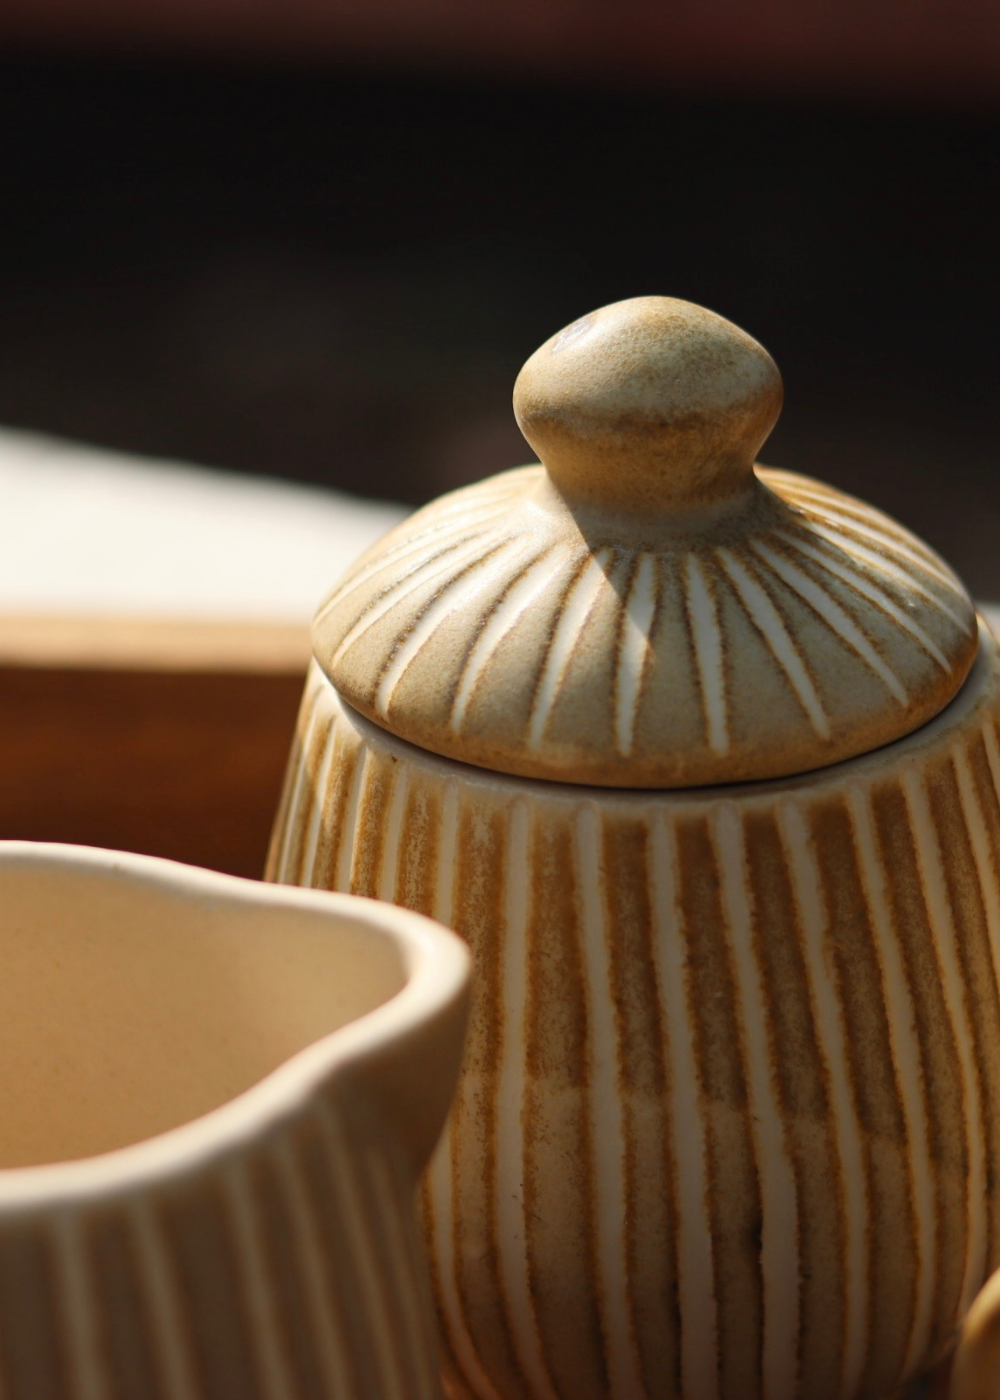 Ceramic sugar pot